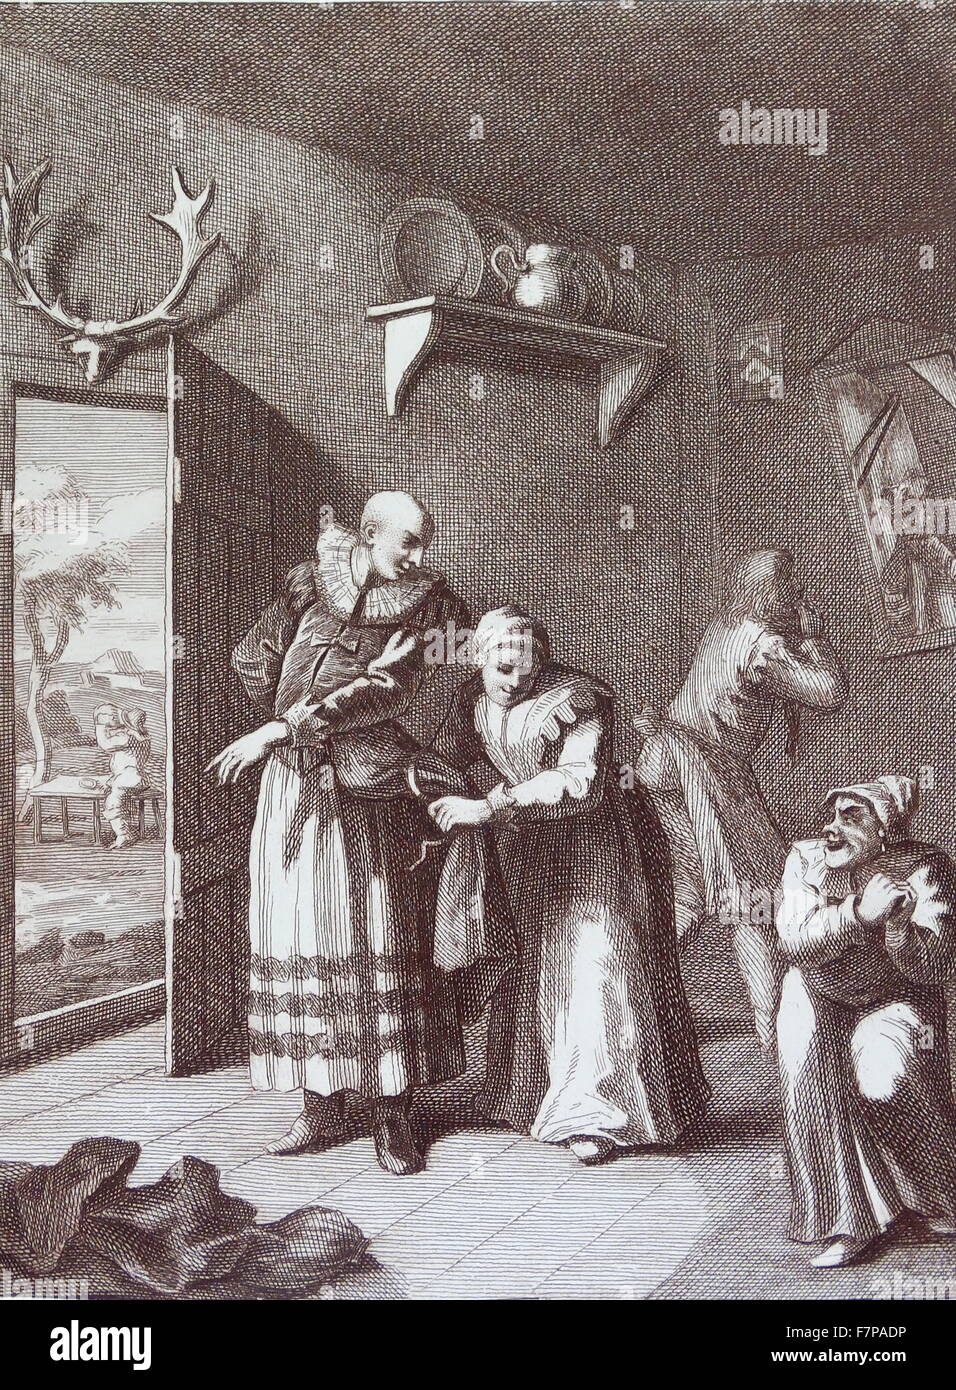 Le curé et le barbier déguisements eux-mêmes à prendre Don Quichotte de la maison. 1754 gravure par William Hogarth;18e siècle Banque D'Images